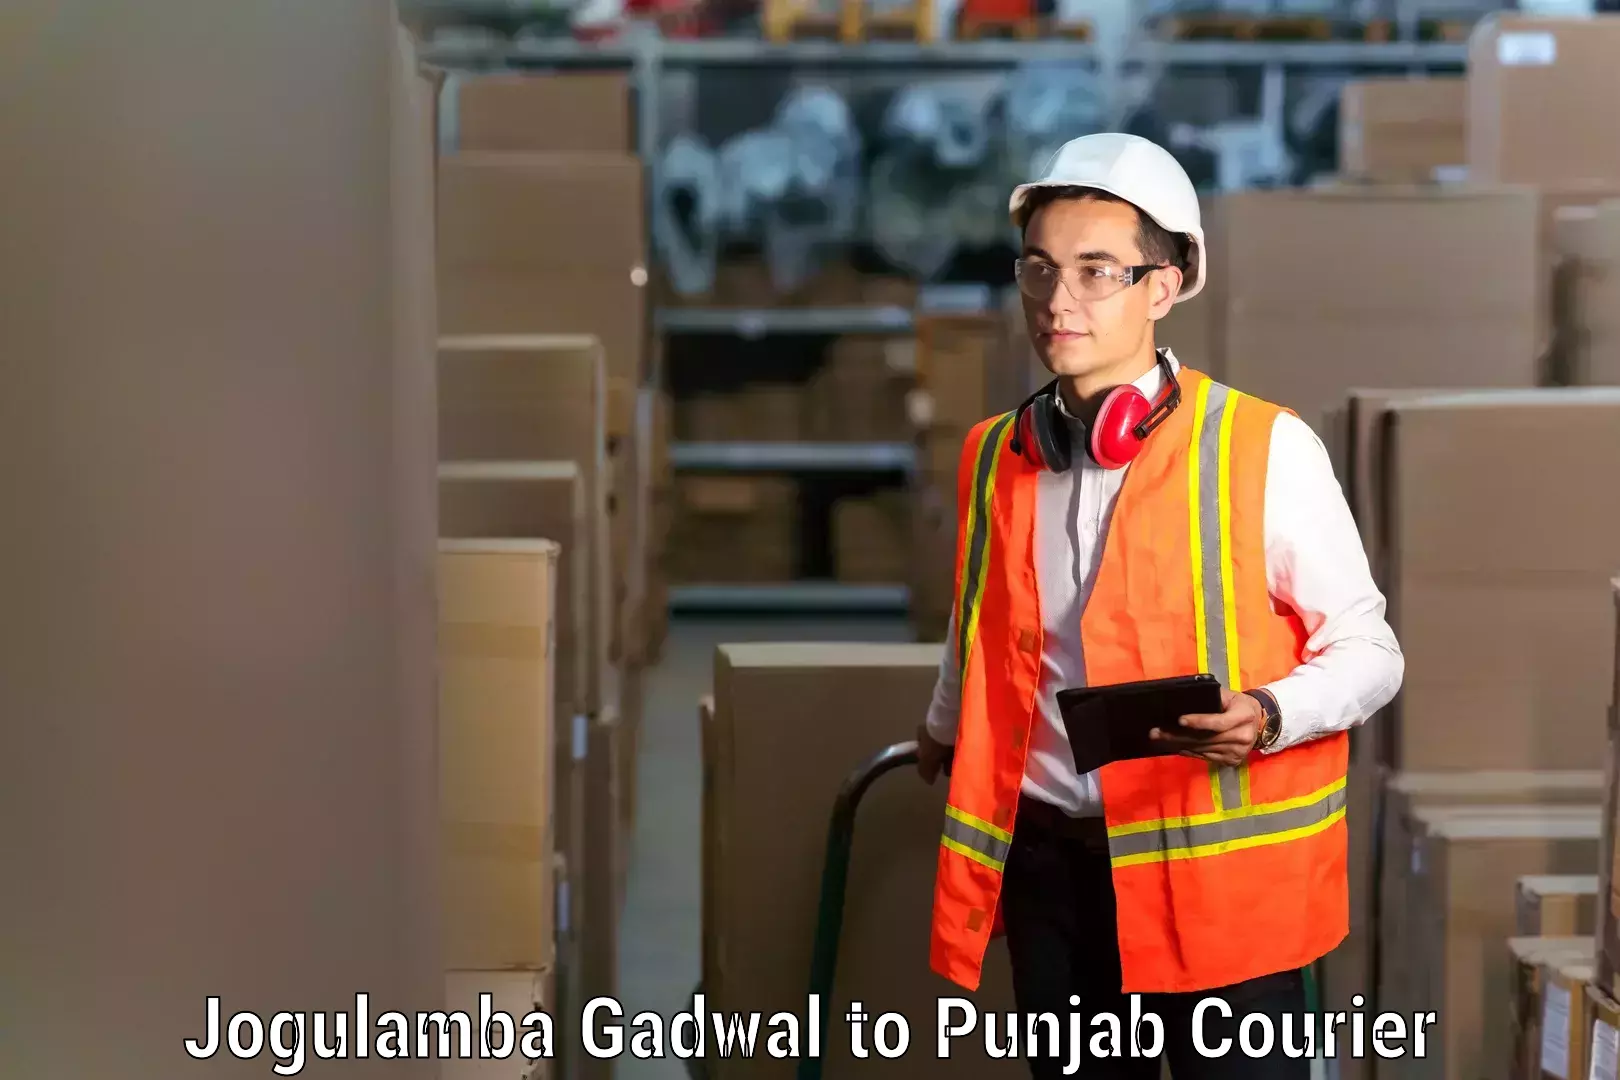 Hassle-free relocation Jogulamba Gadwal to Punjab